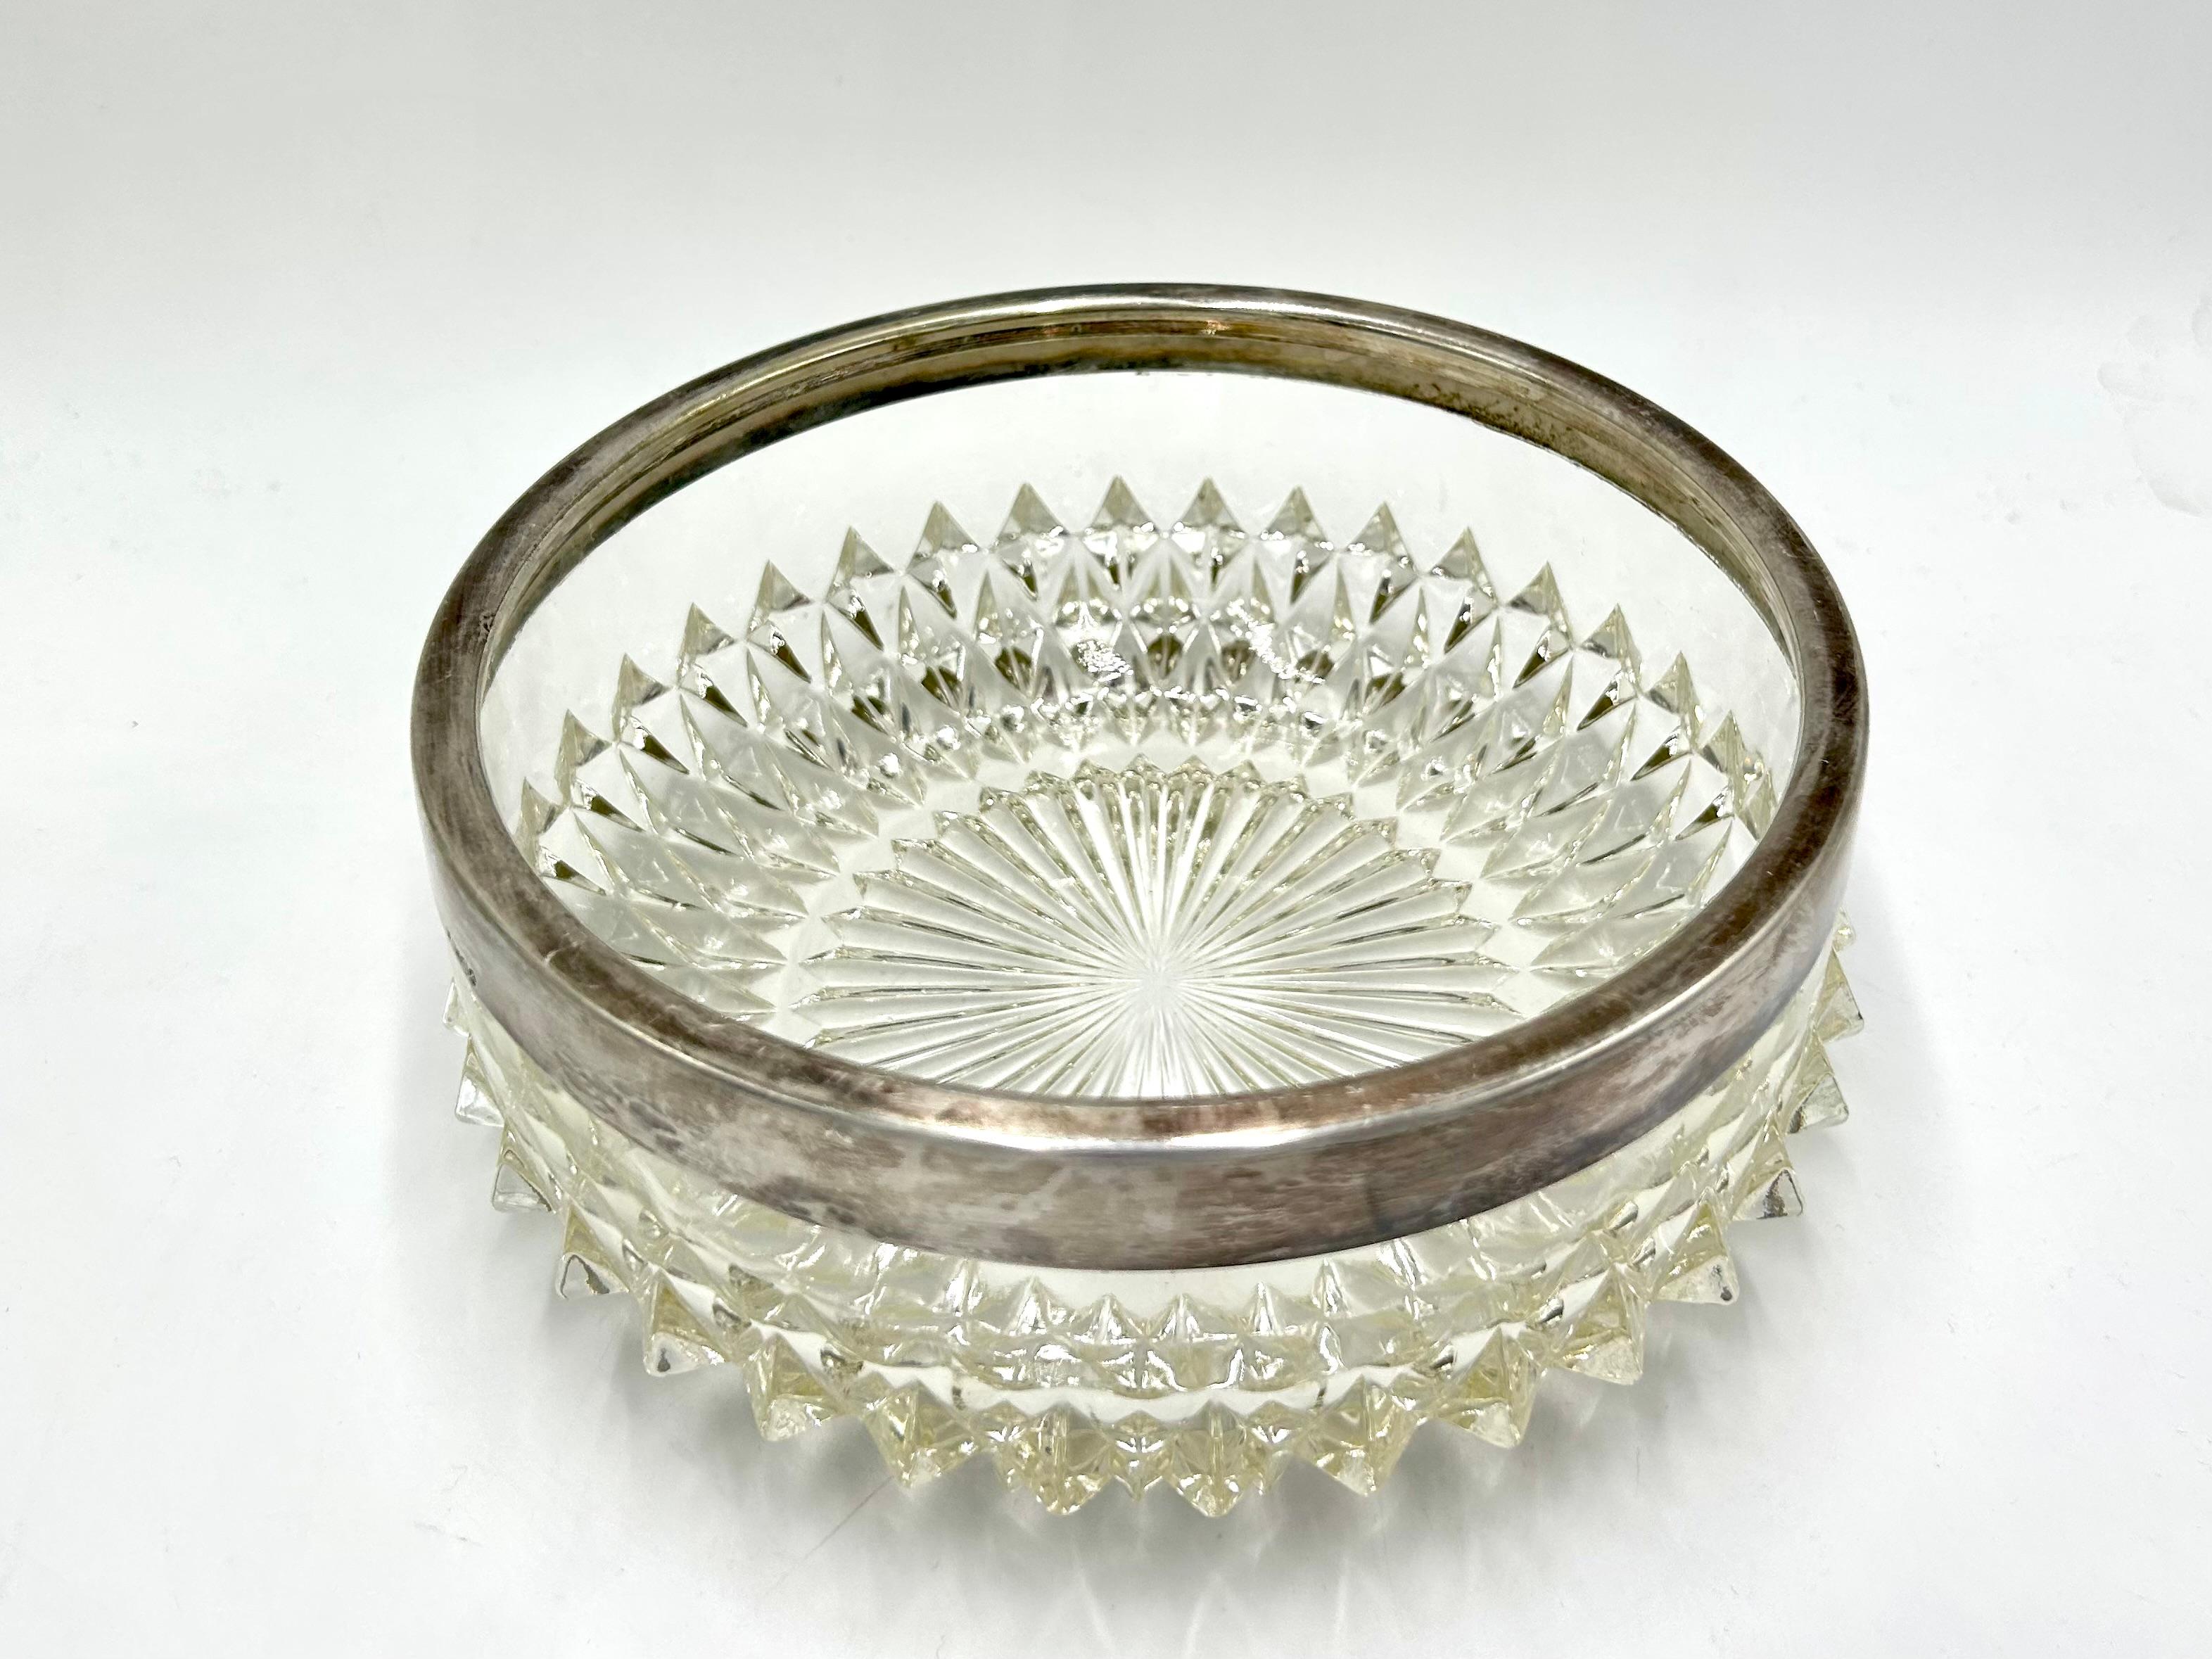 Un cuenco de cristal para dulces rematado con un anillo plateado.

Muy buen estado sin daños

Medidas: altura 8 cm

diámetro 20 cm.